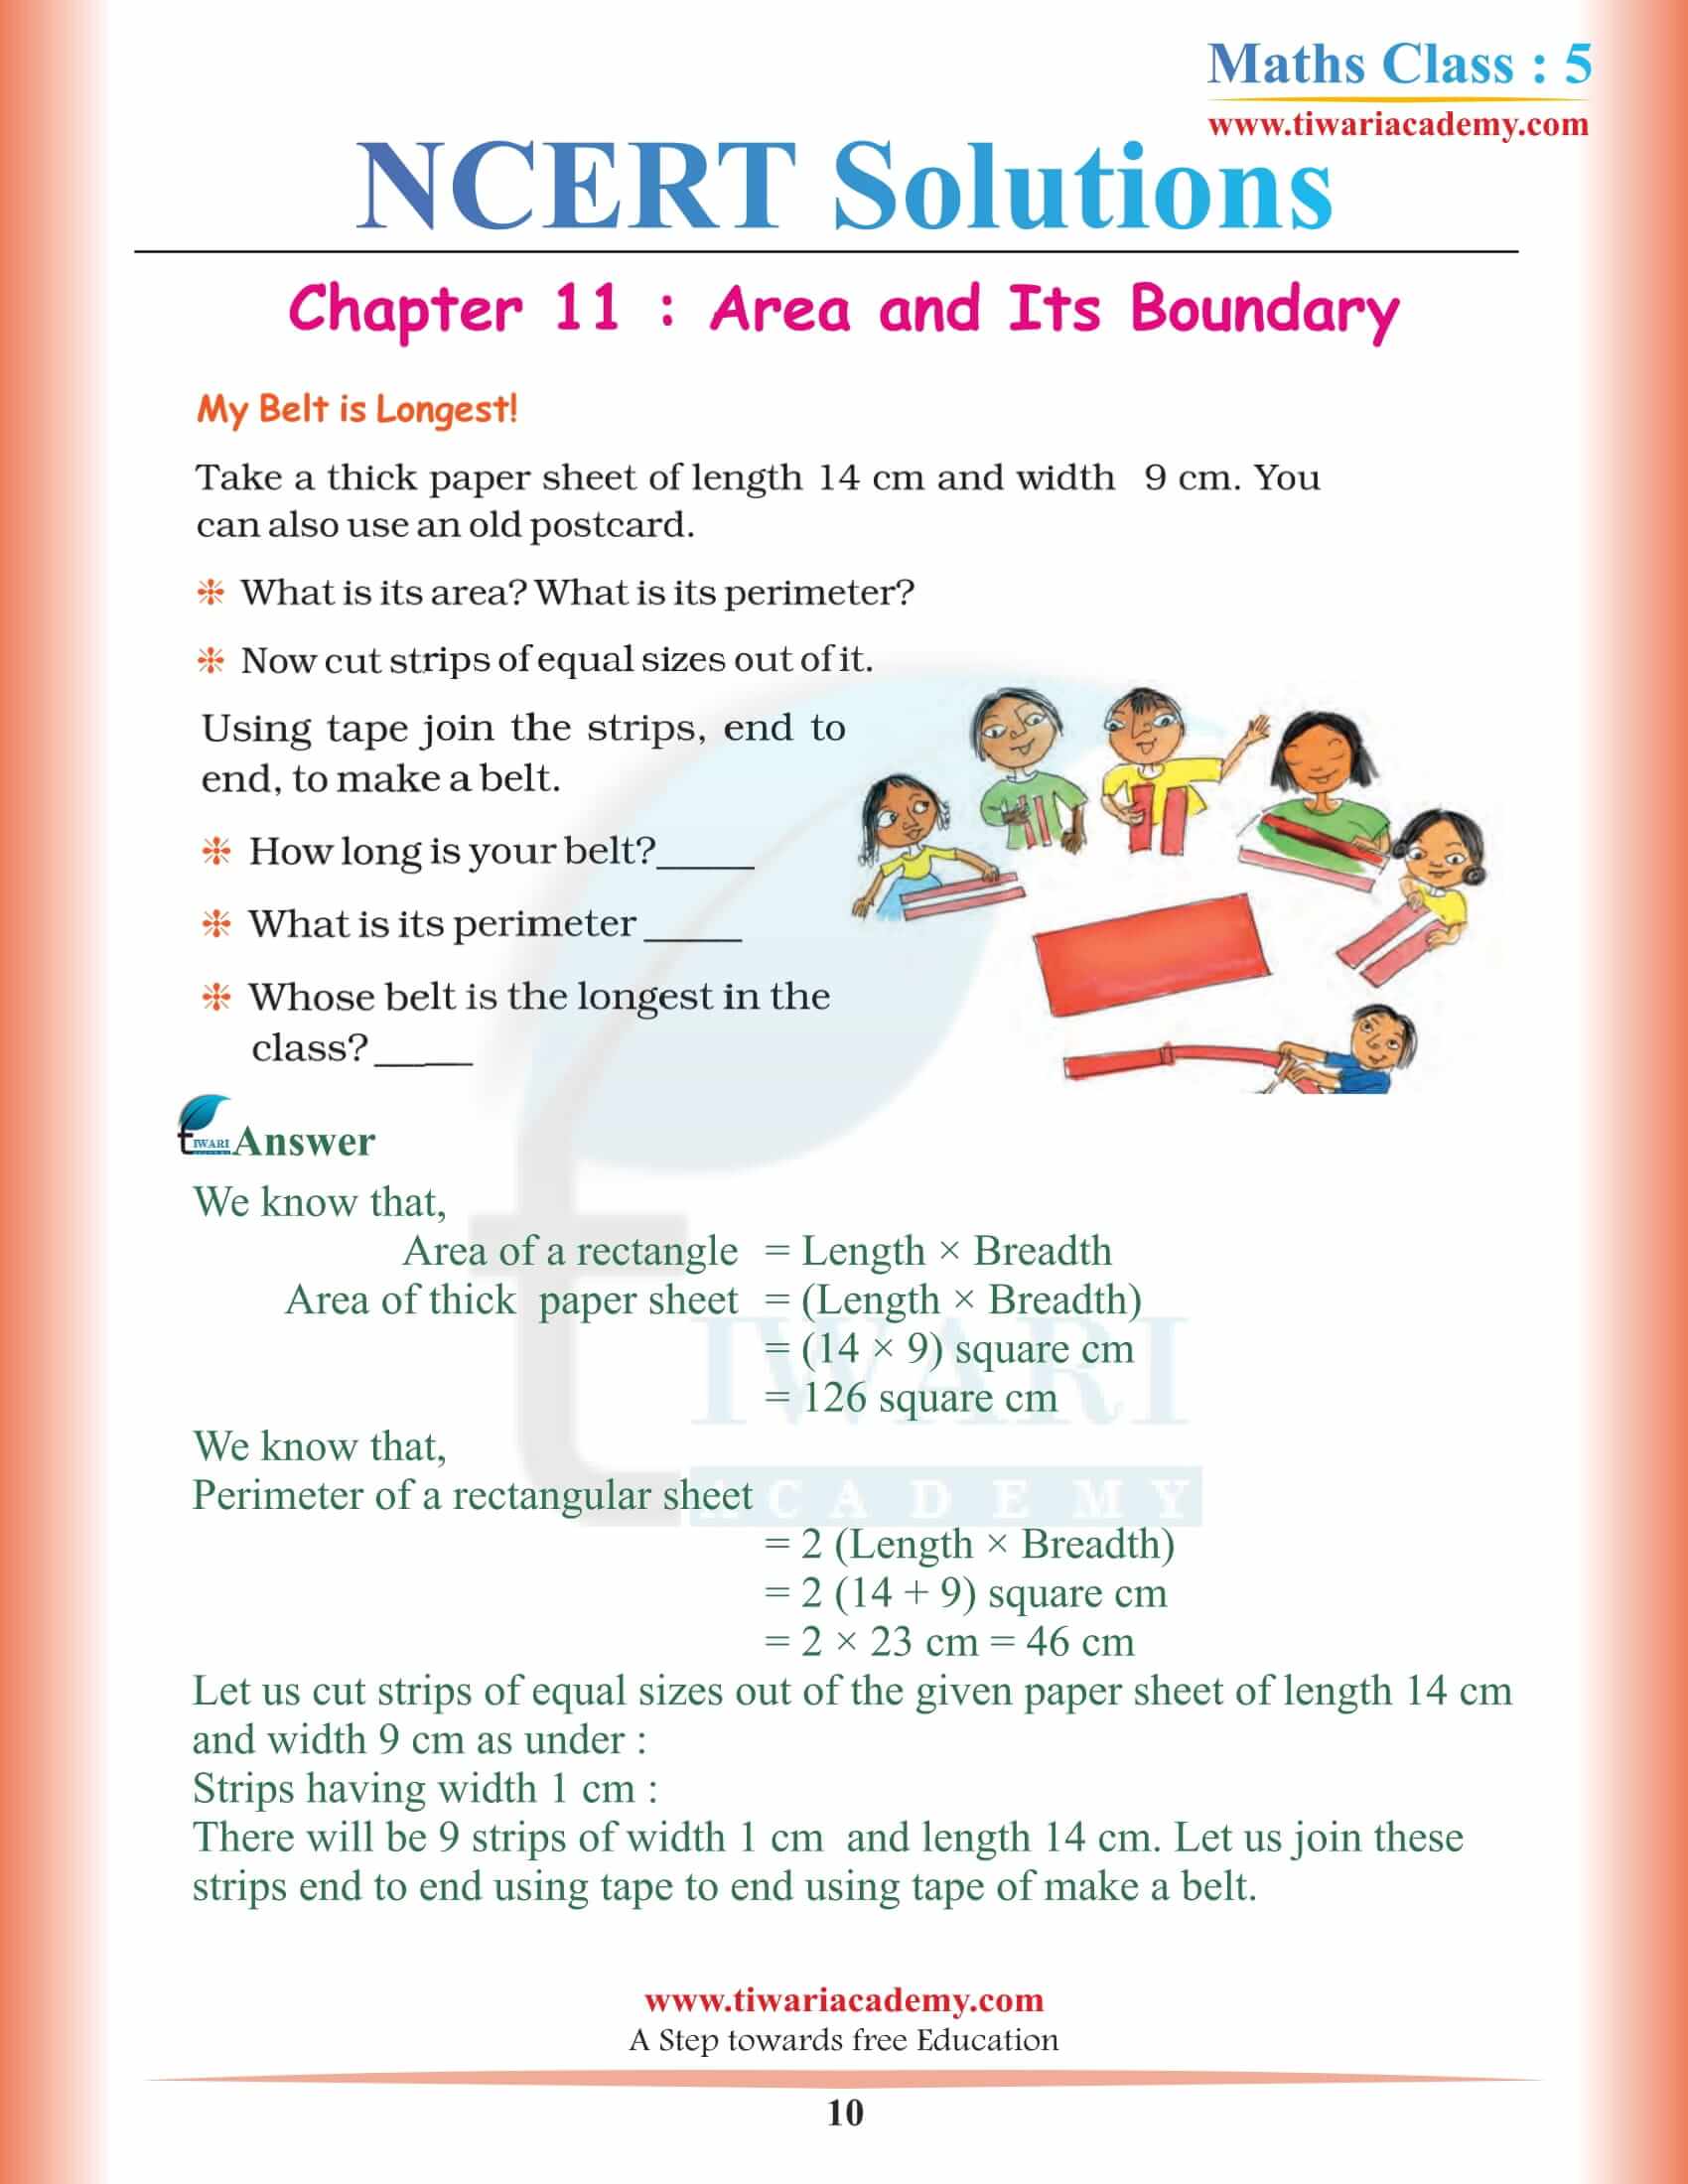 Class 5 Maths NCERT Chapter 11 Solutions